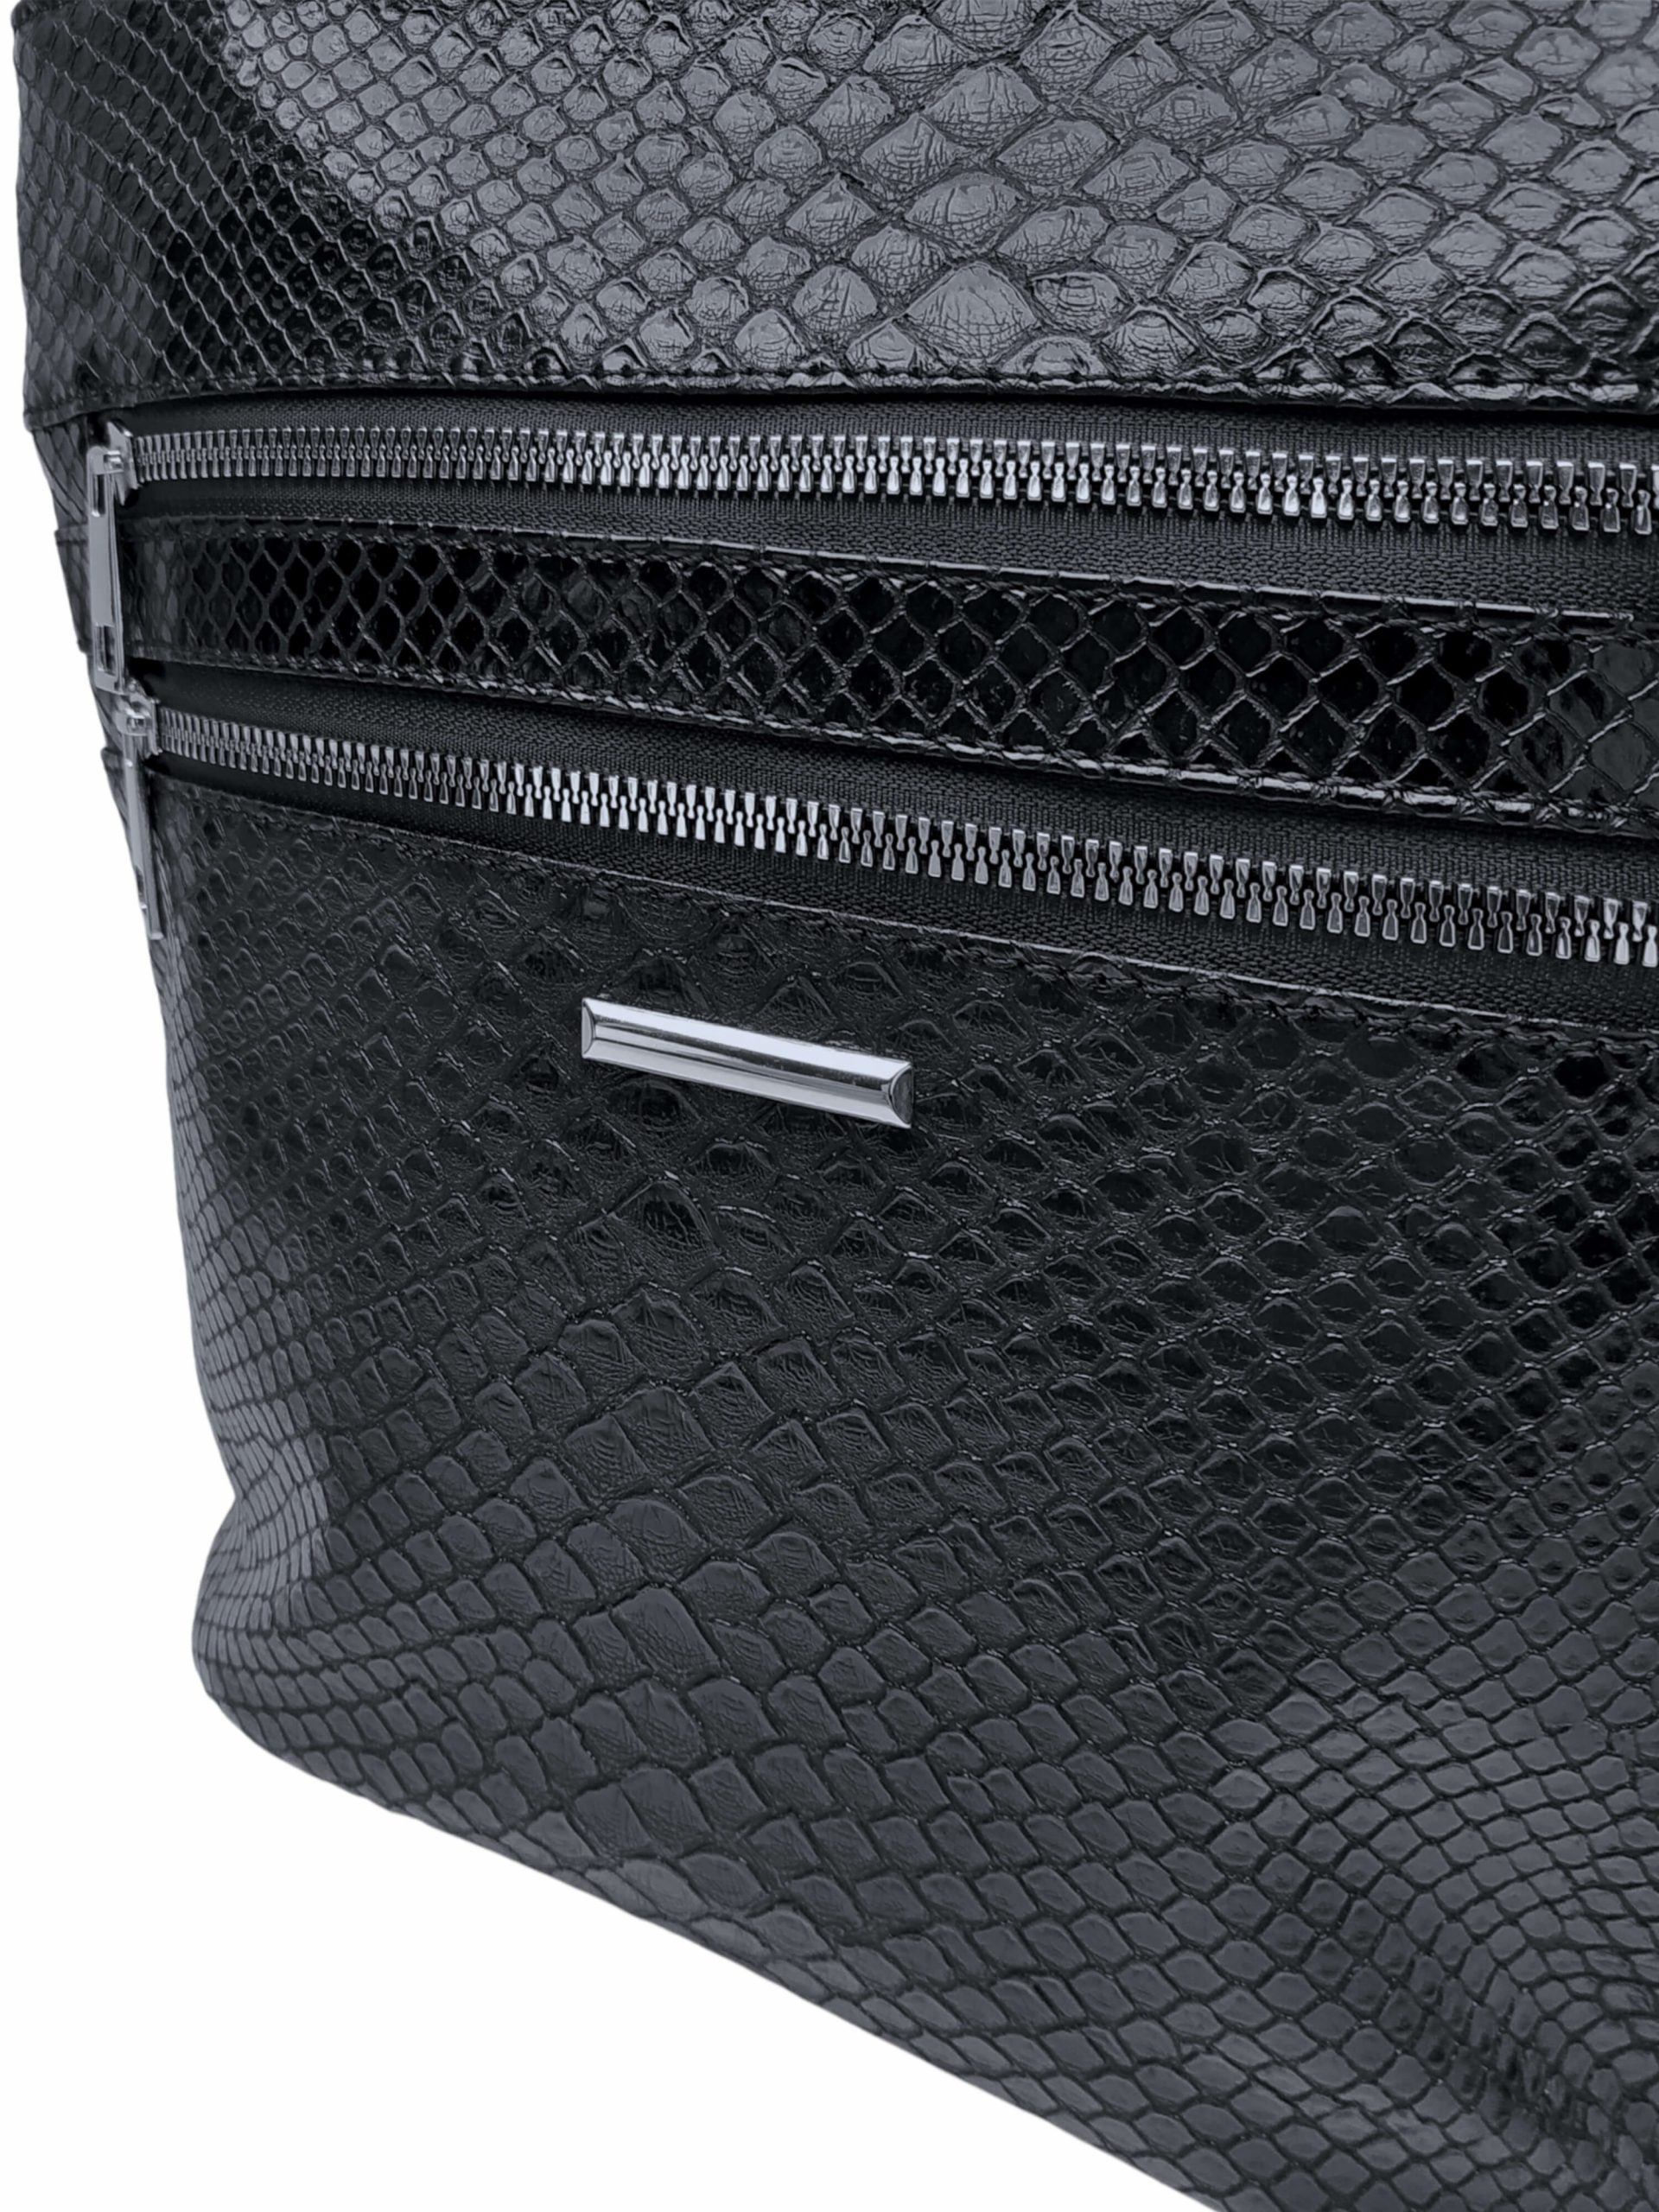 Černá crossbody kabelka s imitací hadí kůže, New Berry, HB-093, detail crossbody kabelky